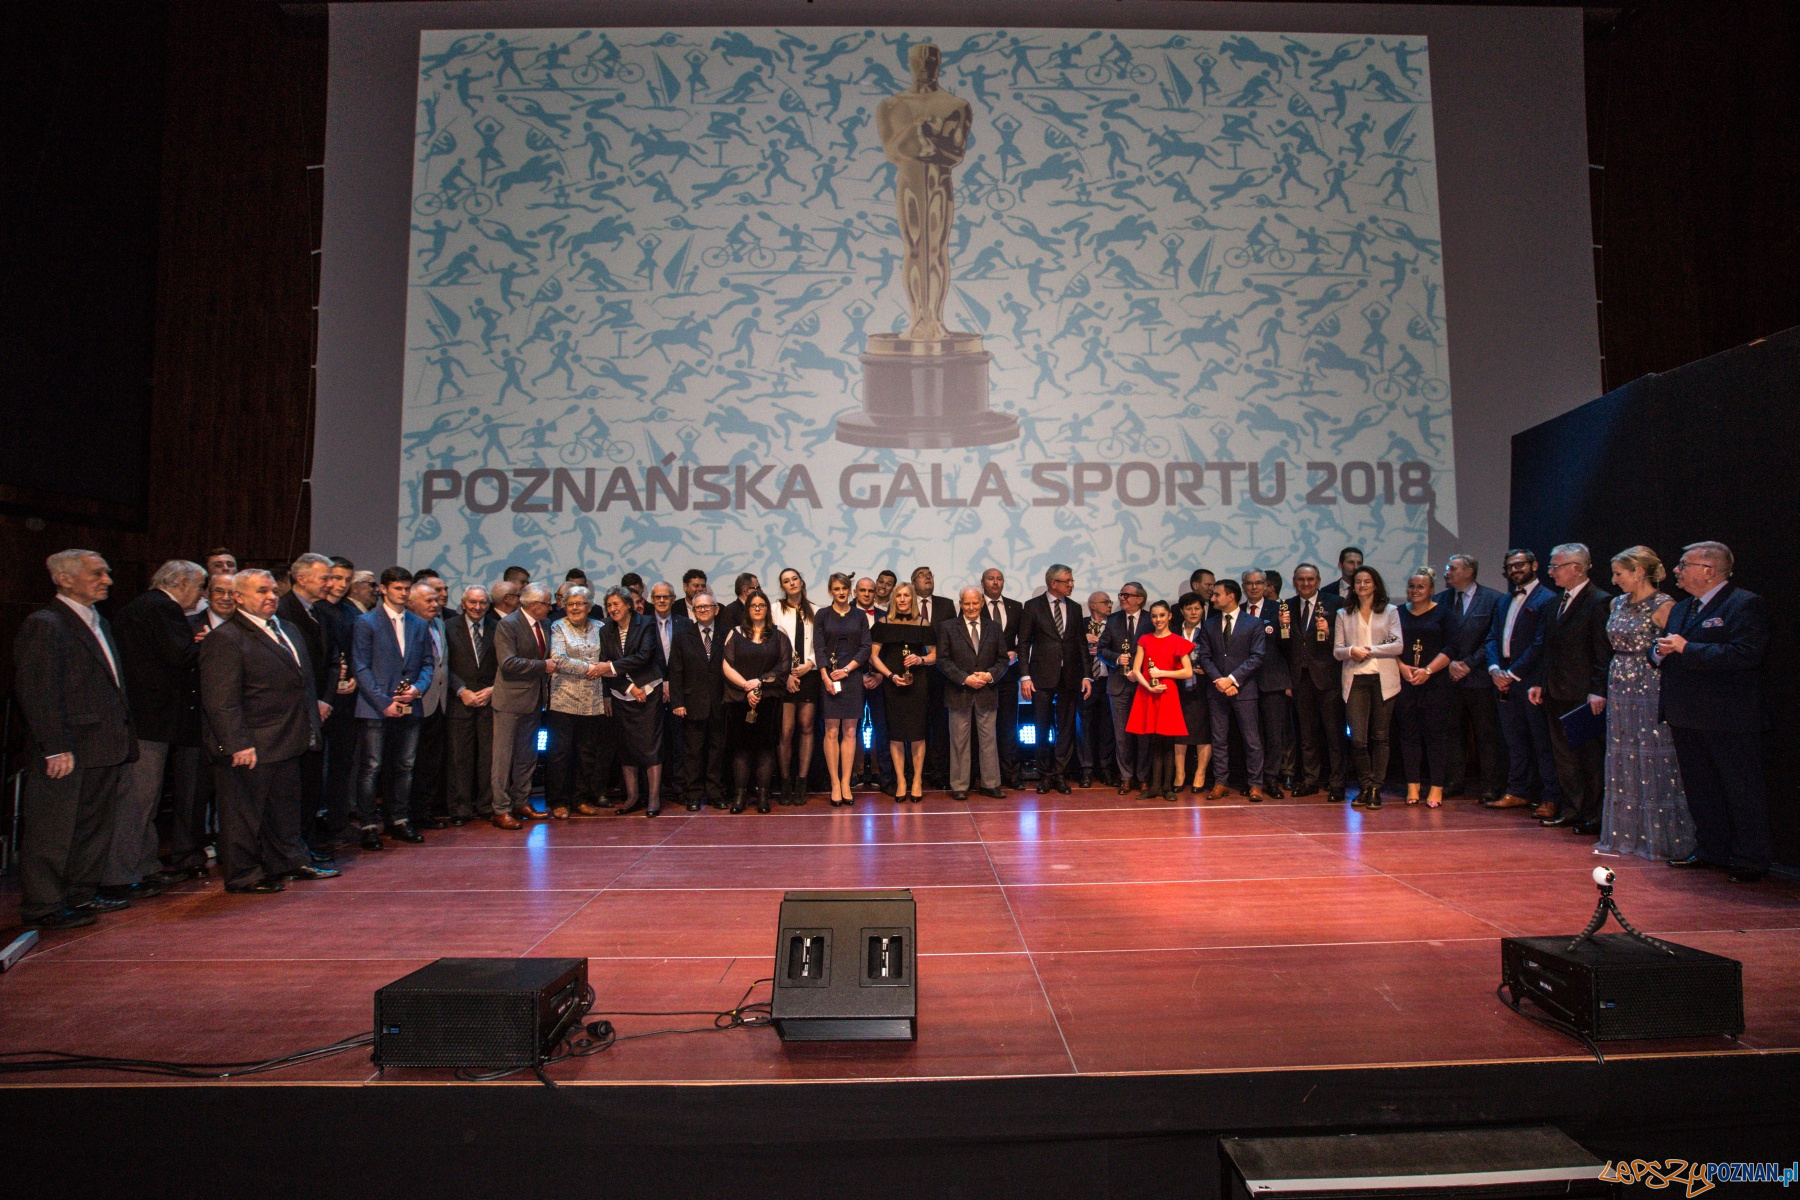 Poznanska Gala Sportu  Foto: materiały prasowe / T. Szwajkowski